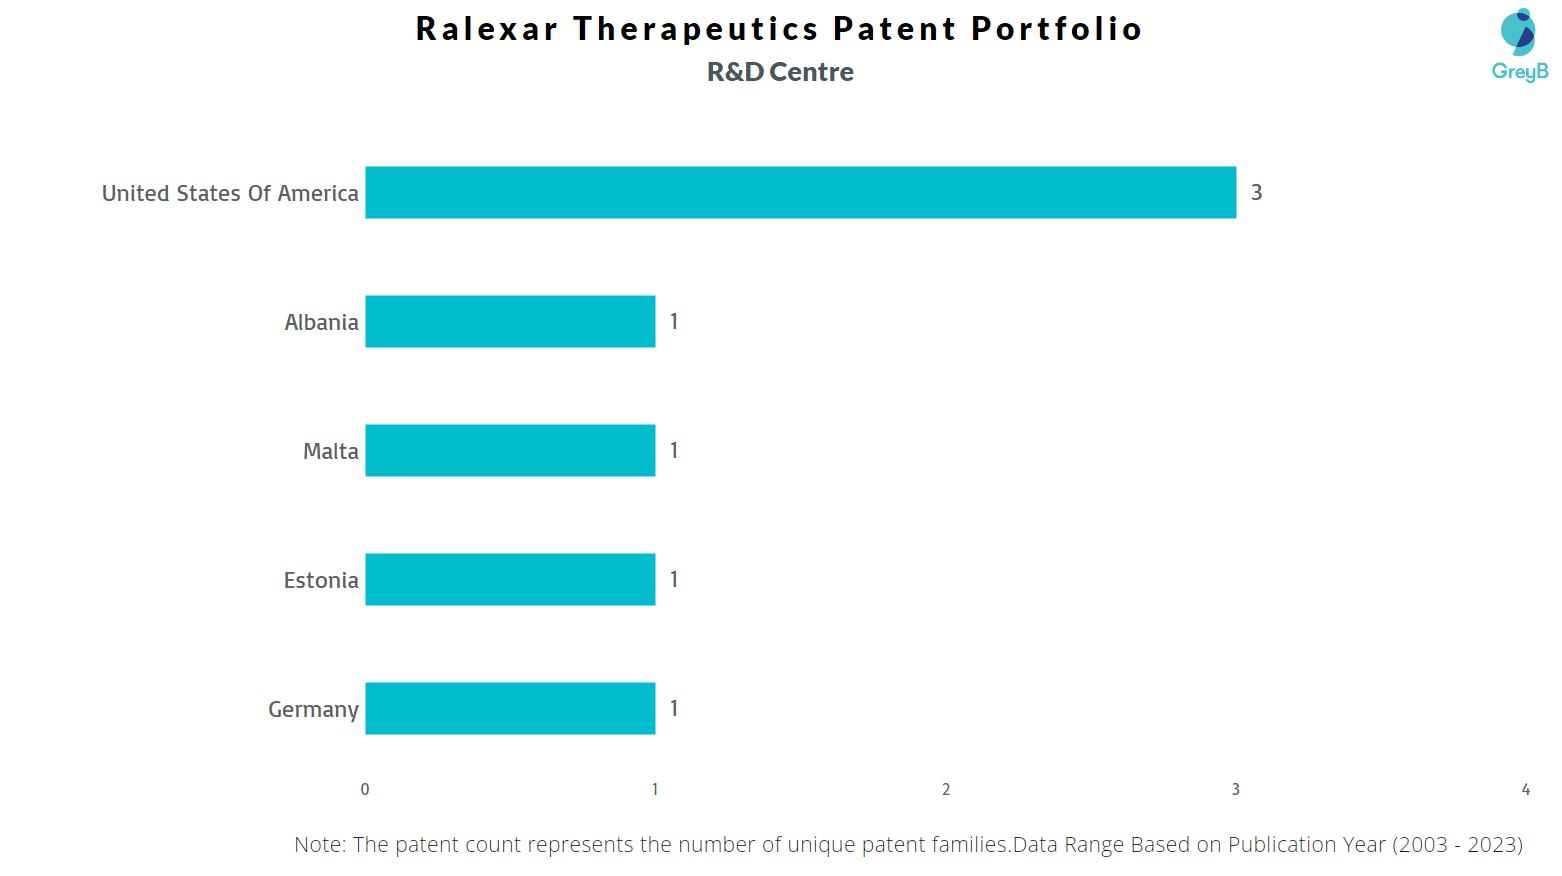 R&D Centres of Ralexar Therapeutics